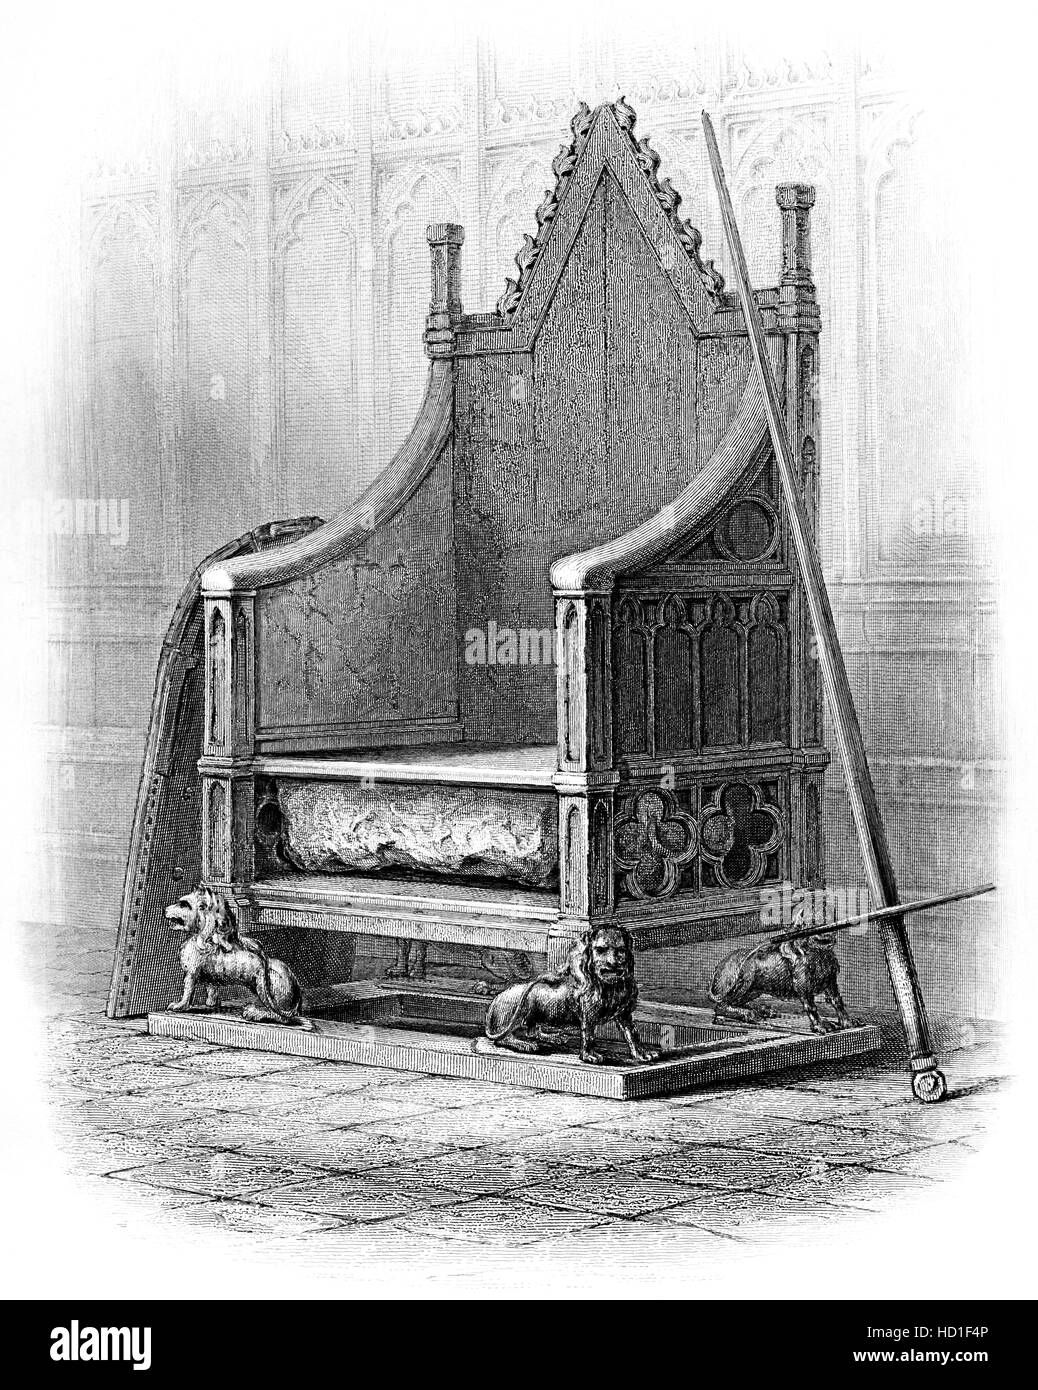 Eine Gravur des Krönungsstuhls in Westminster Abbey, die in hoher Auflösung aus einem 1859 gedruckten Buch gescannt wurde. Urheberrechtlich geschützt. Stockfoto